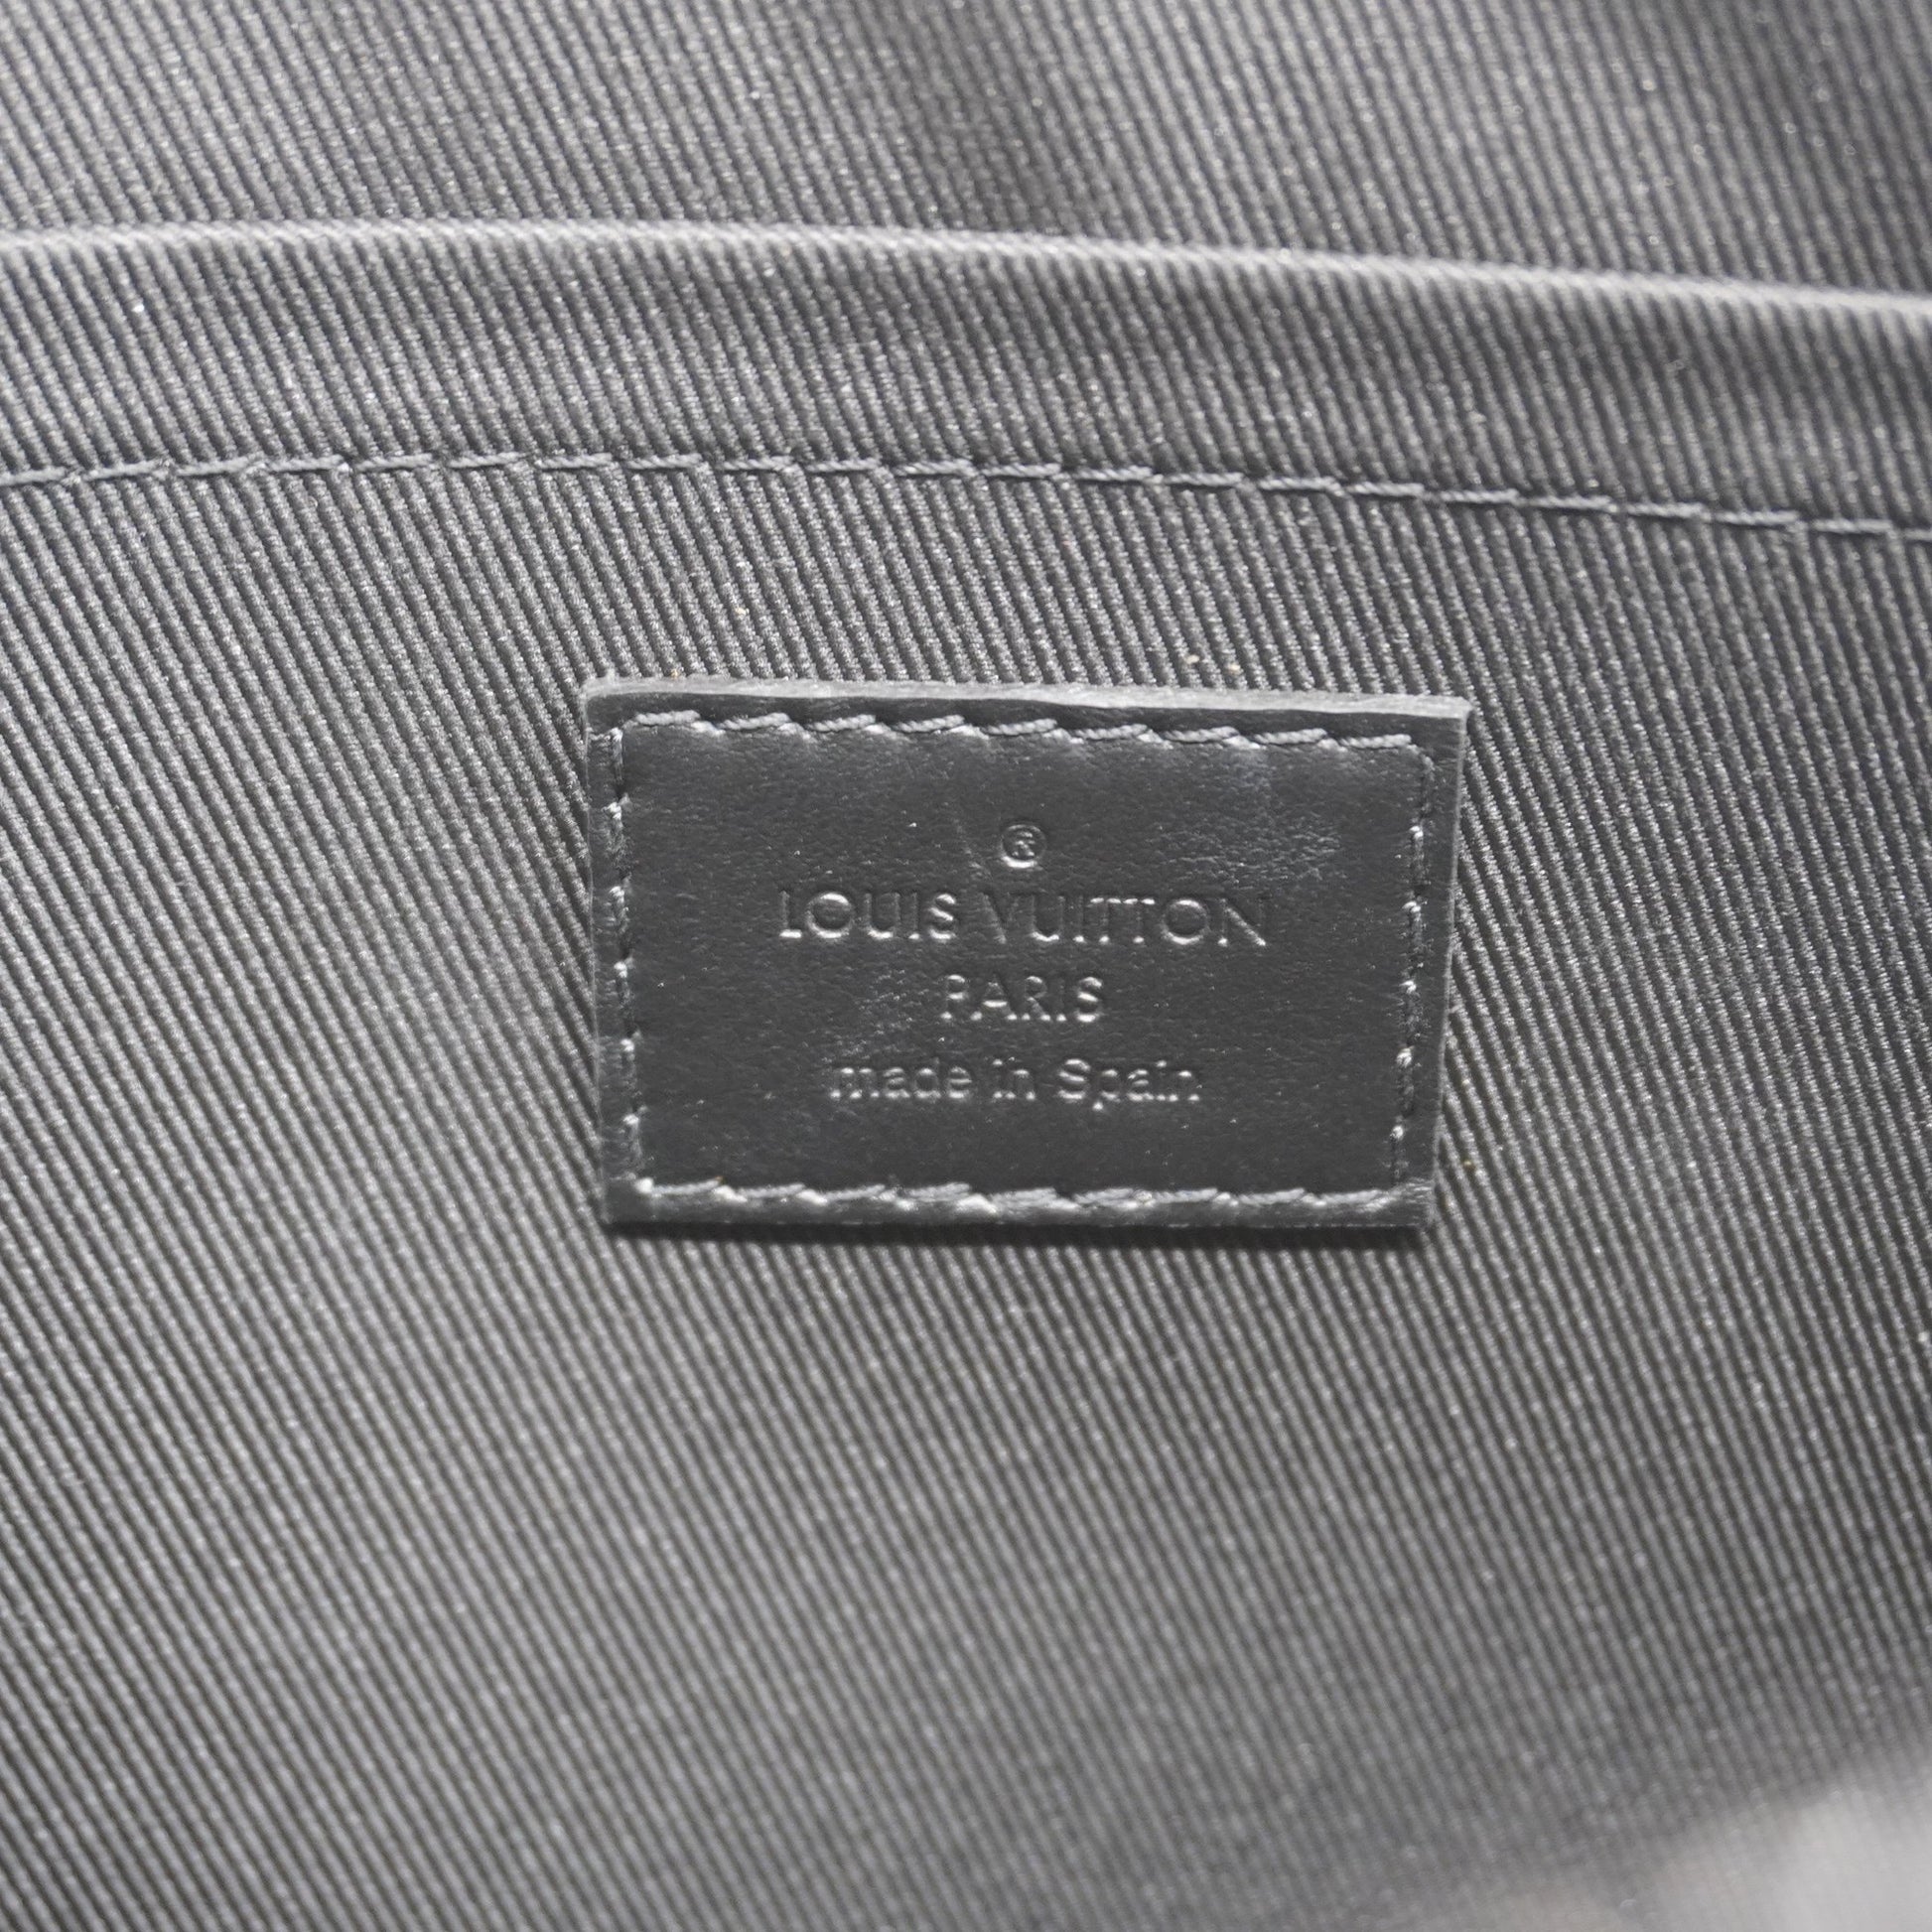 LV x YK Pochette Clé Monogram Eclipse - Men - Small Leather Goods